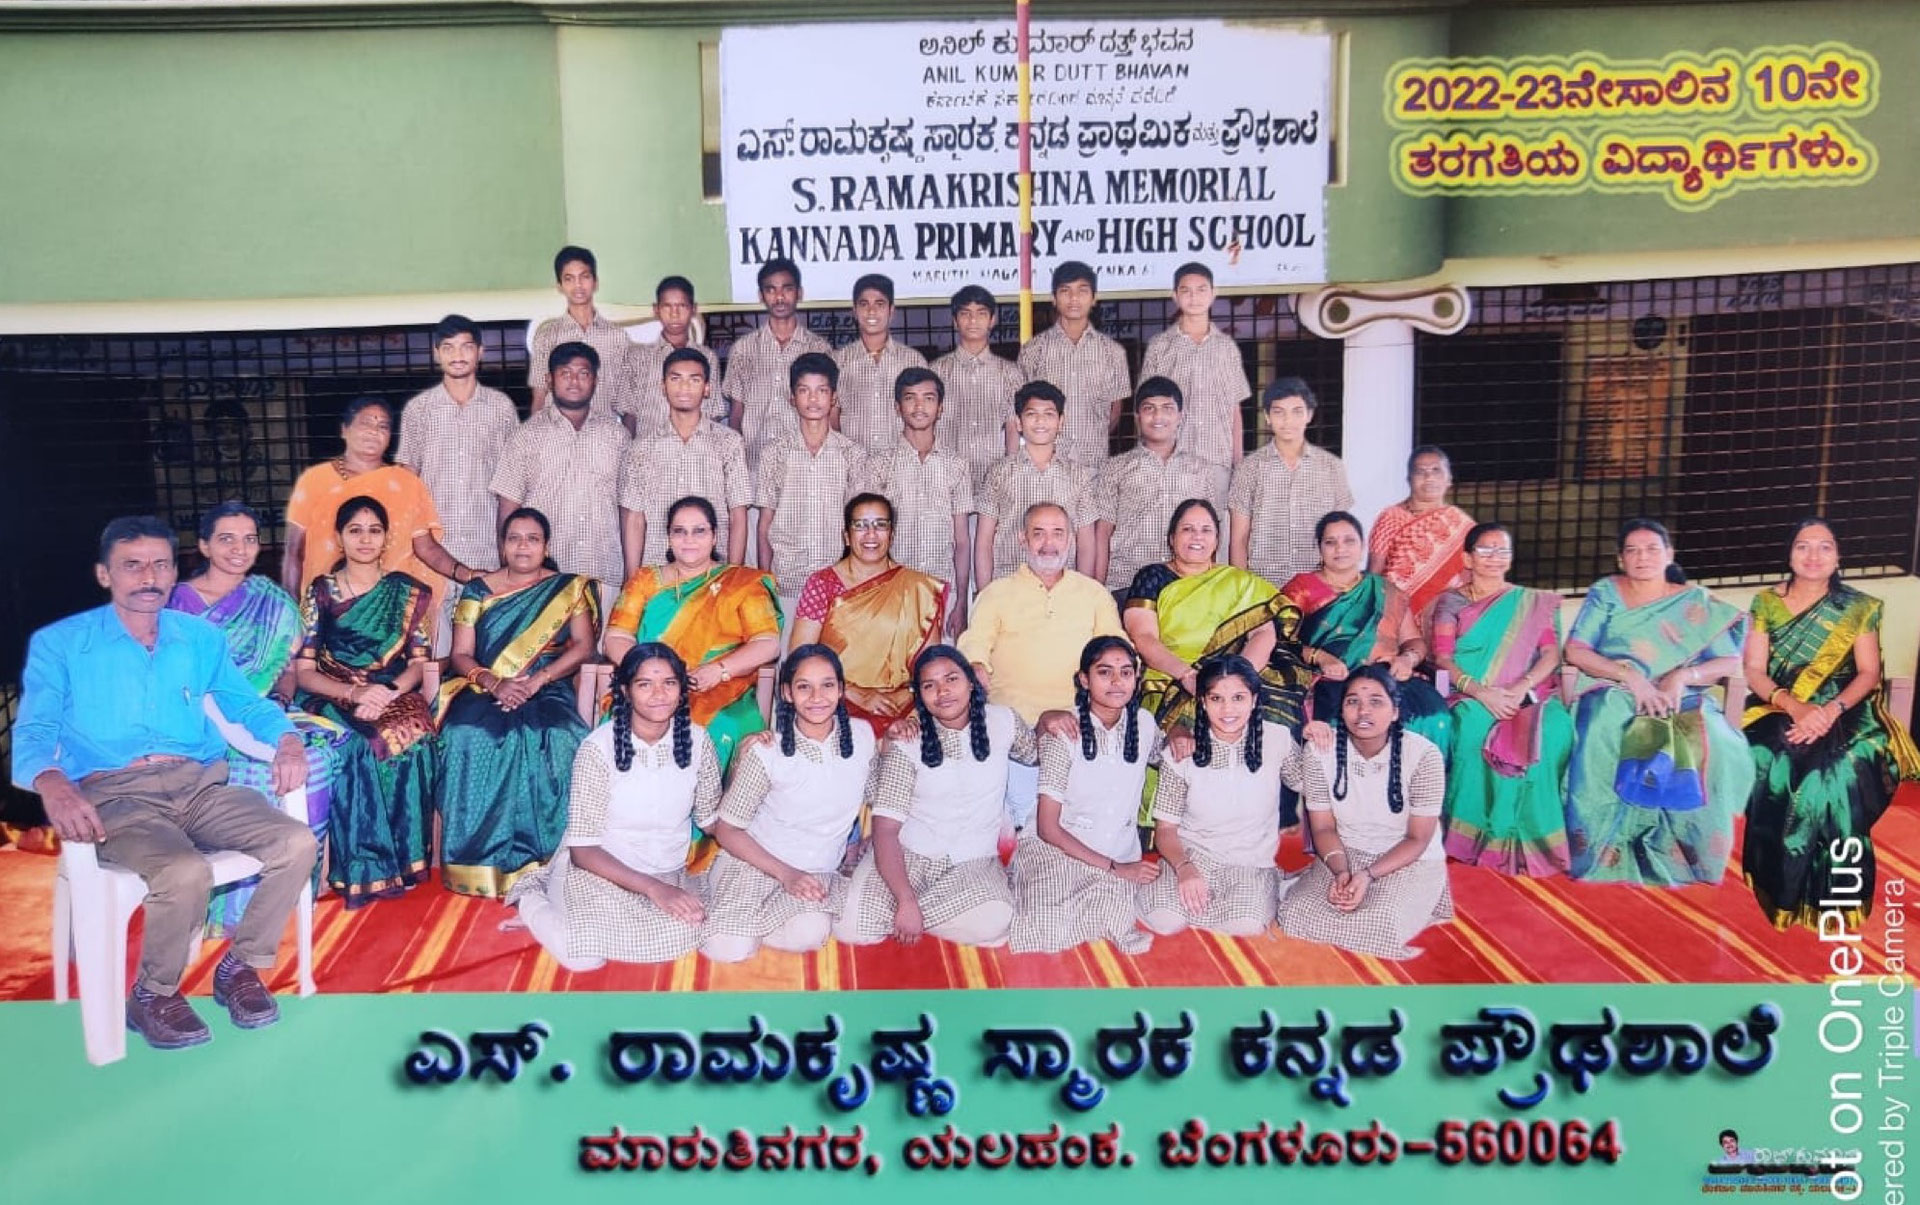 (c) Pro-schule-bangalore.ch